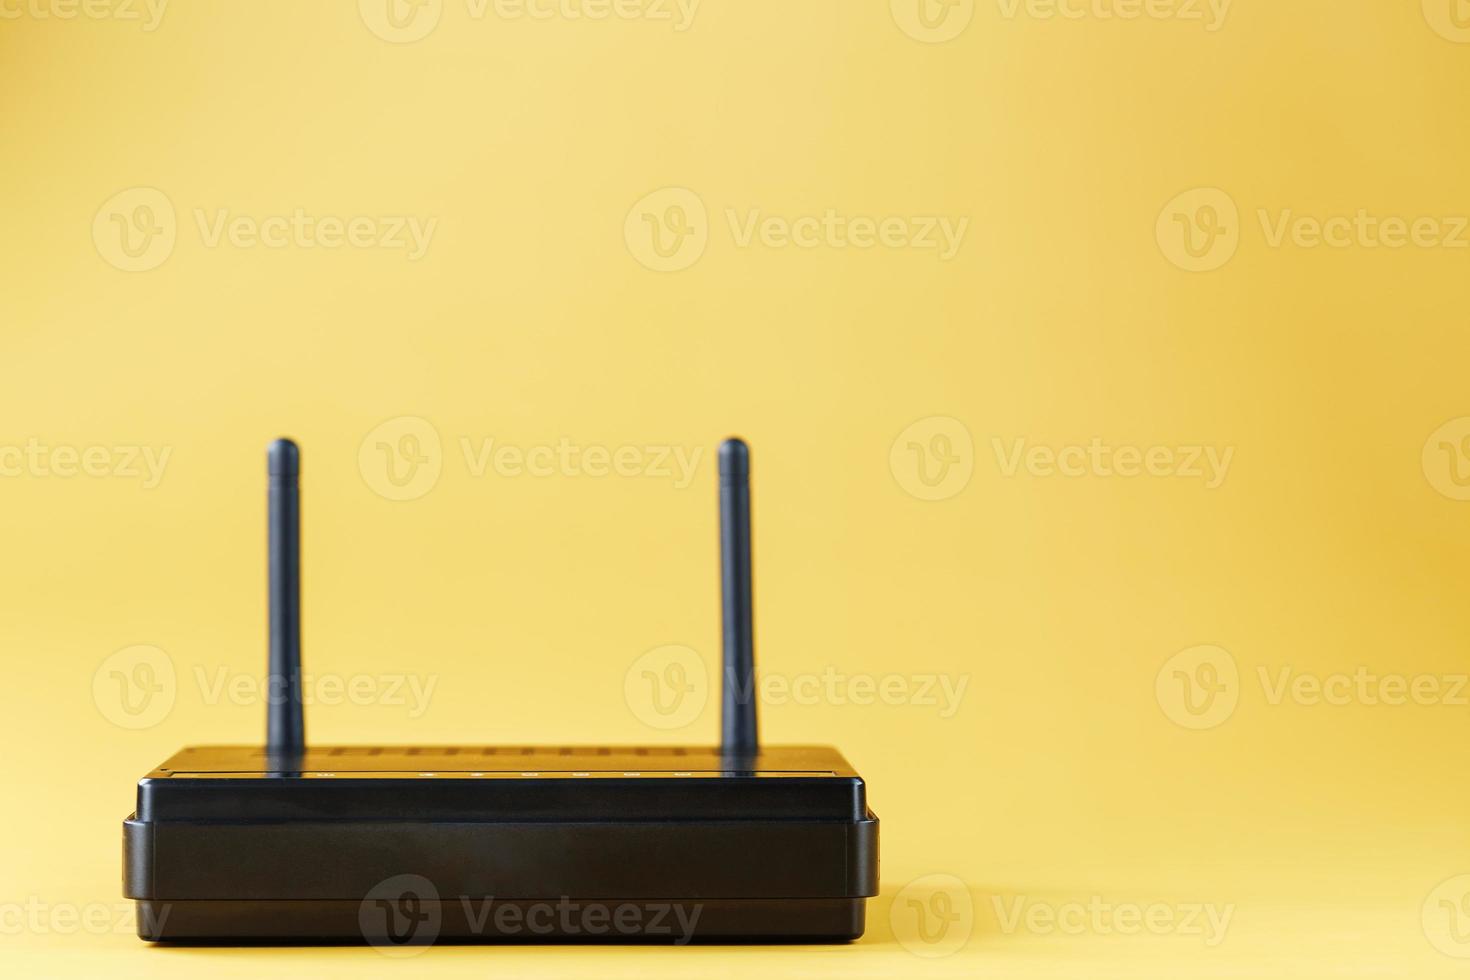 Wi-fi roteador dentro Preto em uma amarelo fundo com livre espaço. foto